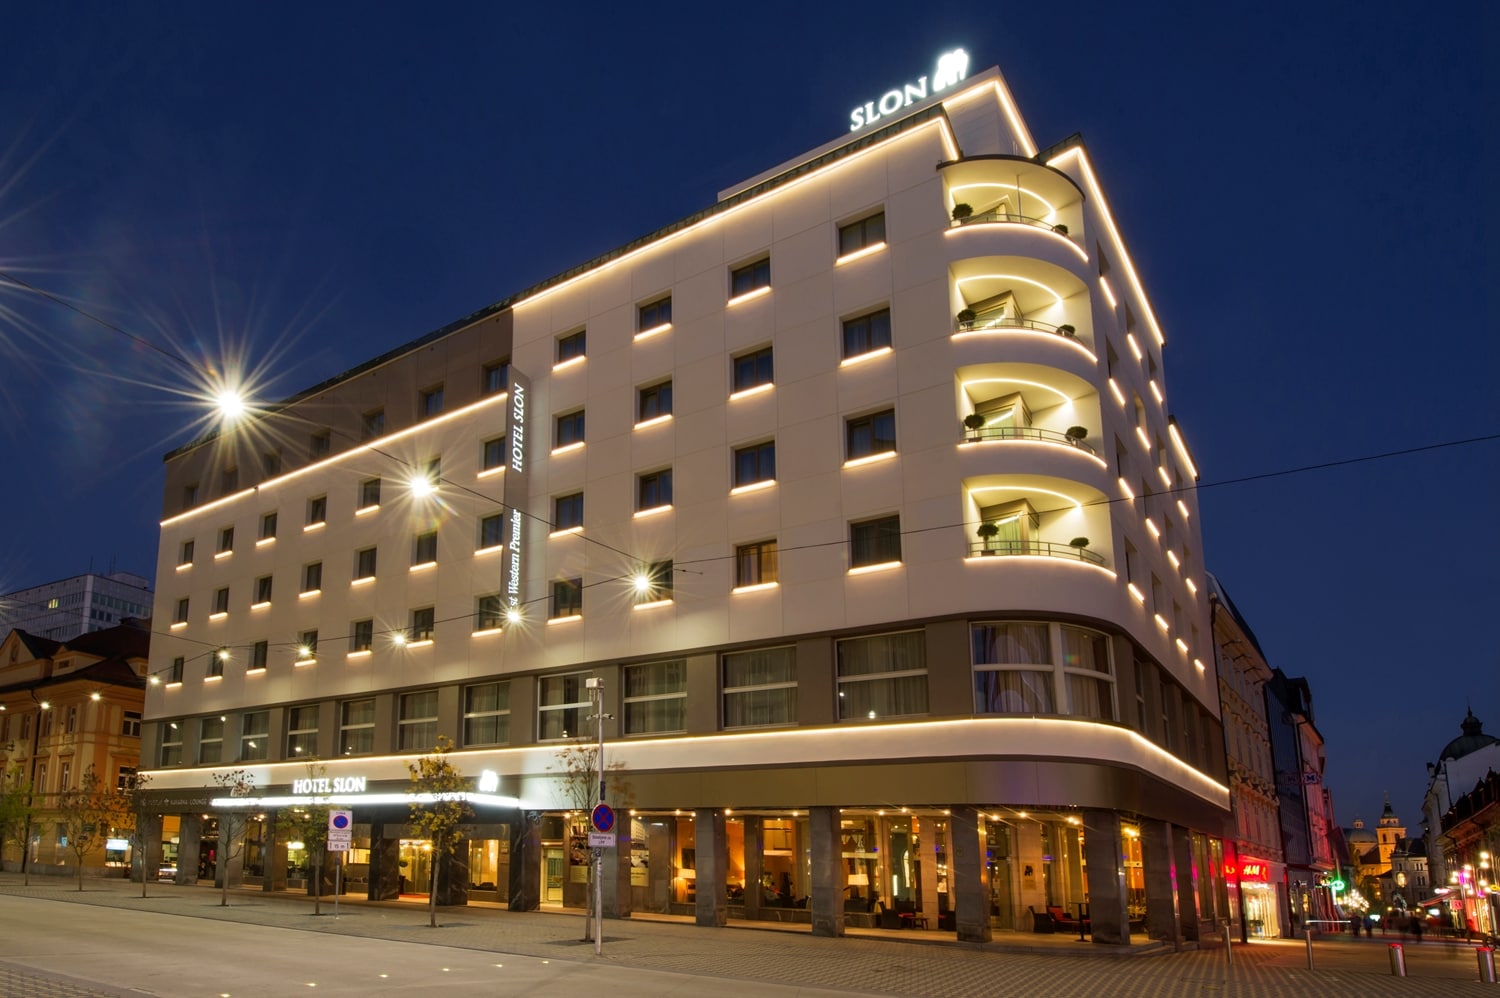 Vedi Dettagli Hotel Best Western Premier Hotel Slon Ljubljana Slovenia